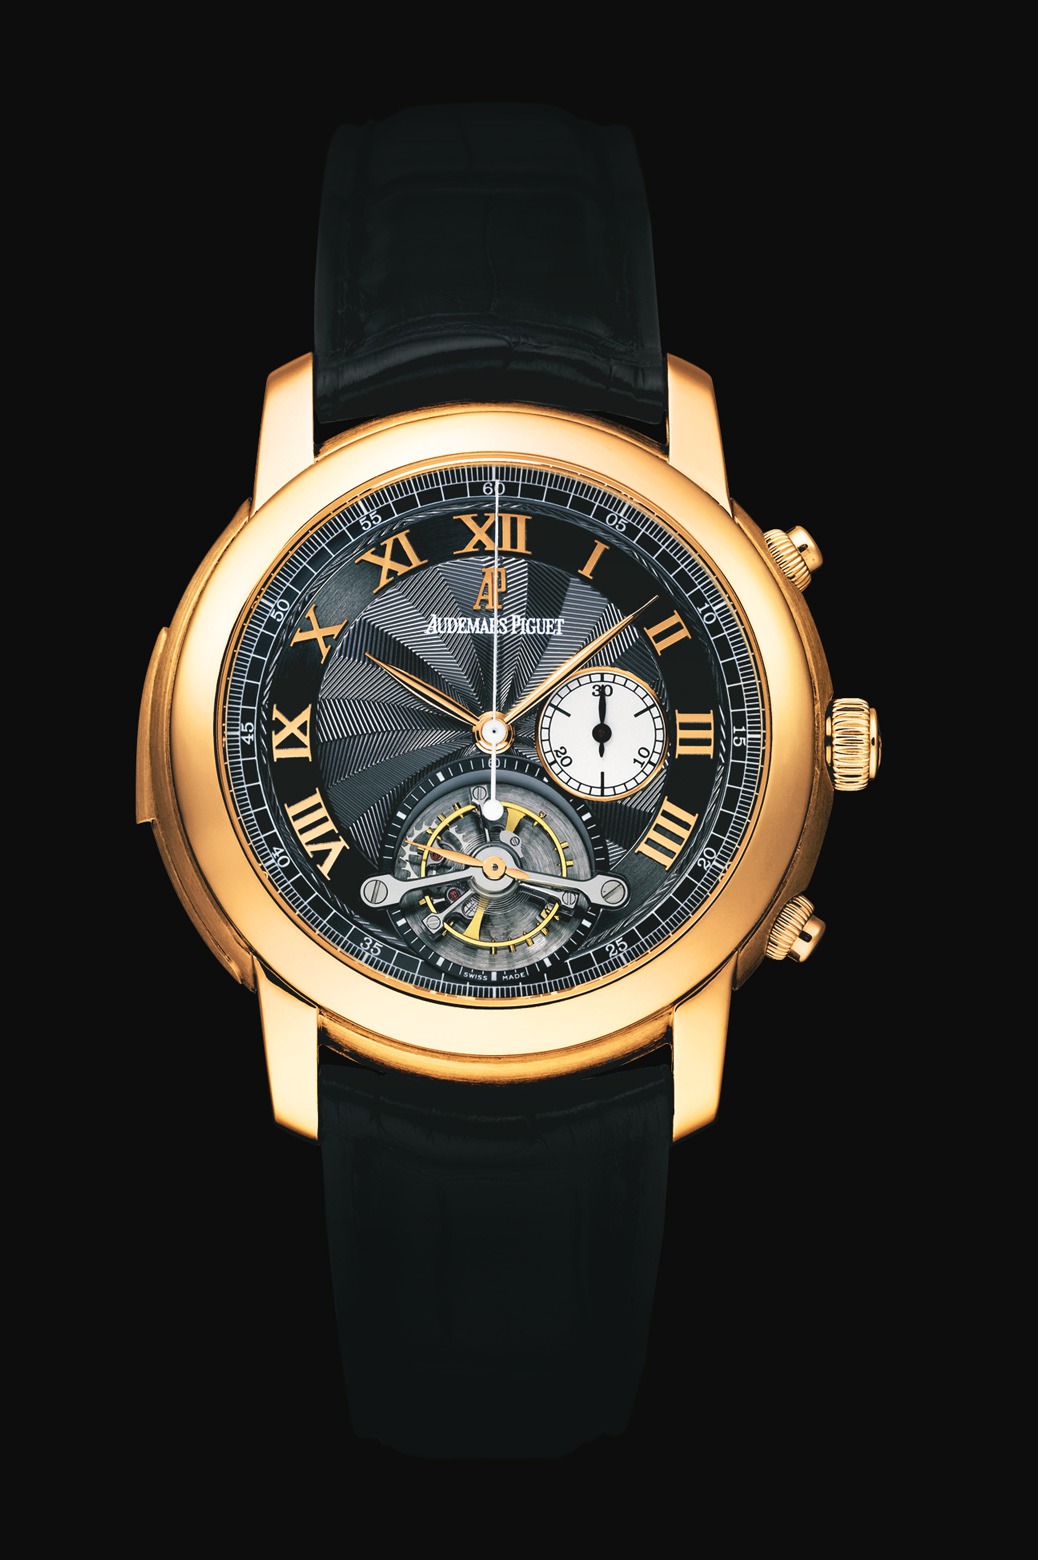 Audemars Piguet Jules Audemars Minute Repeater Chronograph Tourbillon Pink Gold watch REF: 26050OR.OO.D002CR.01